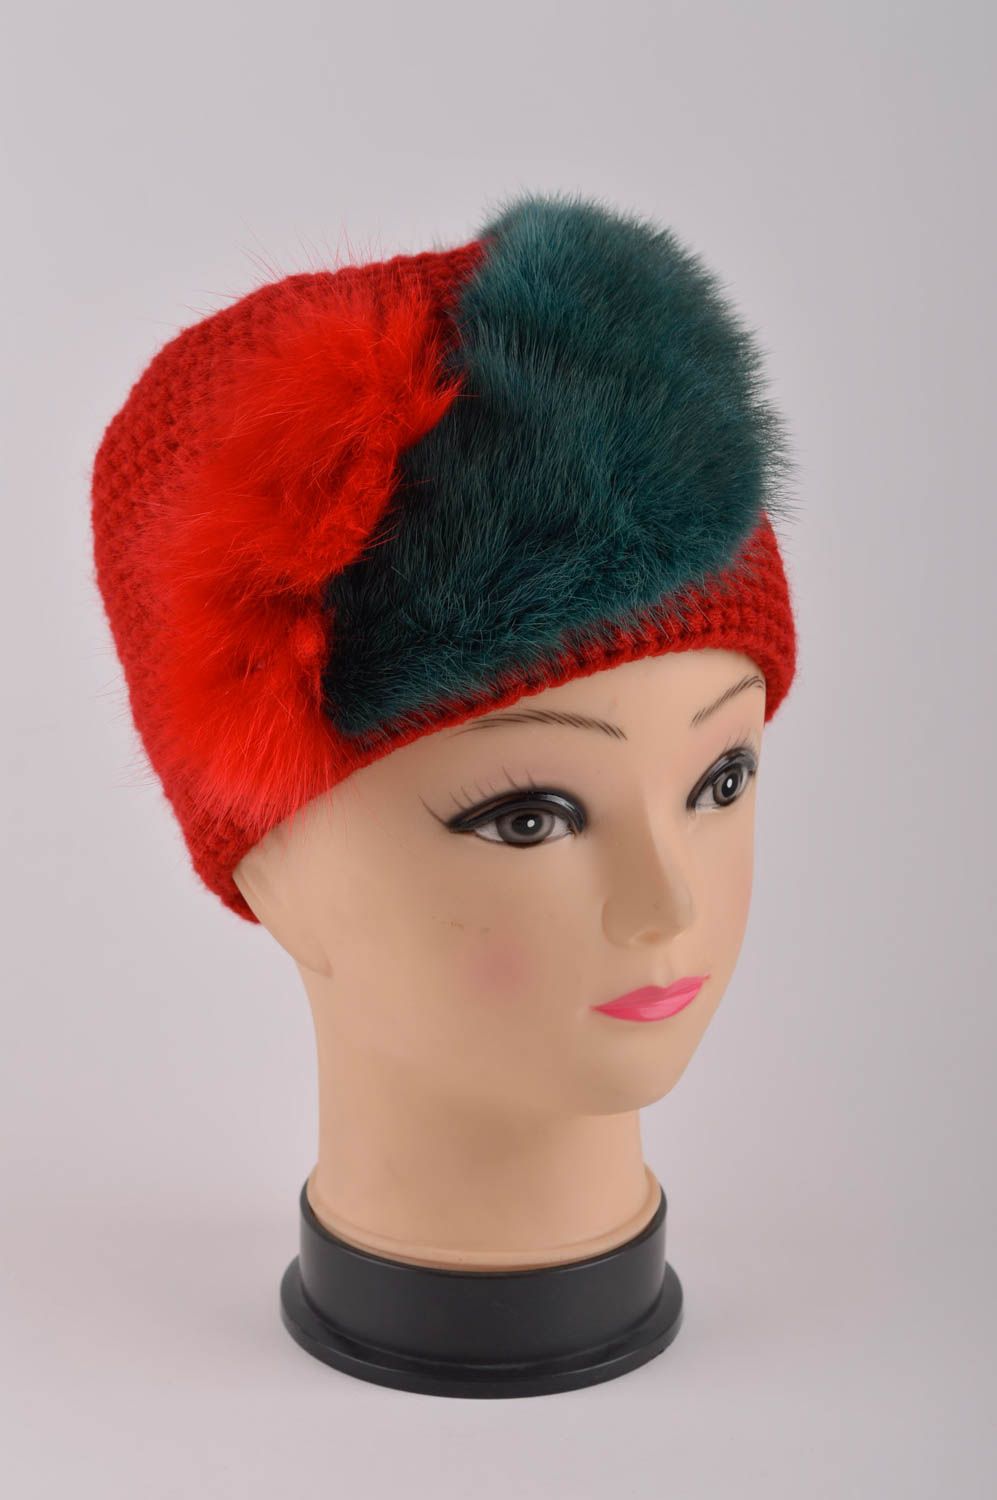 Handmade hat designer warm hat children hat woolen headwear gift ideas photo 2